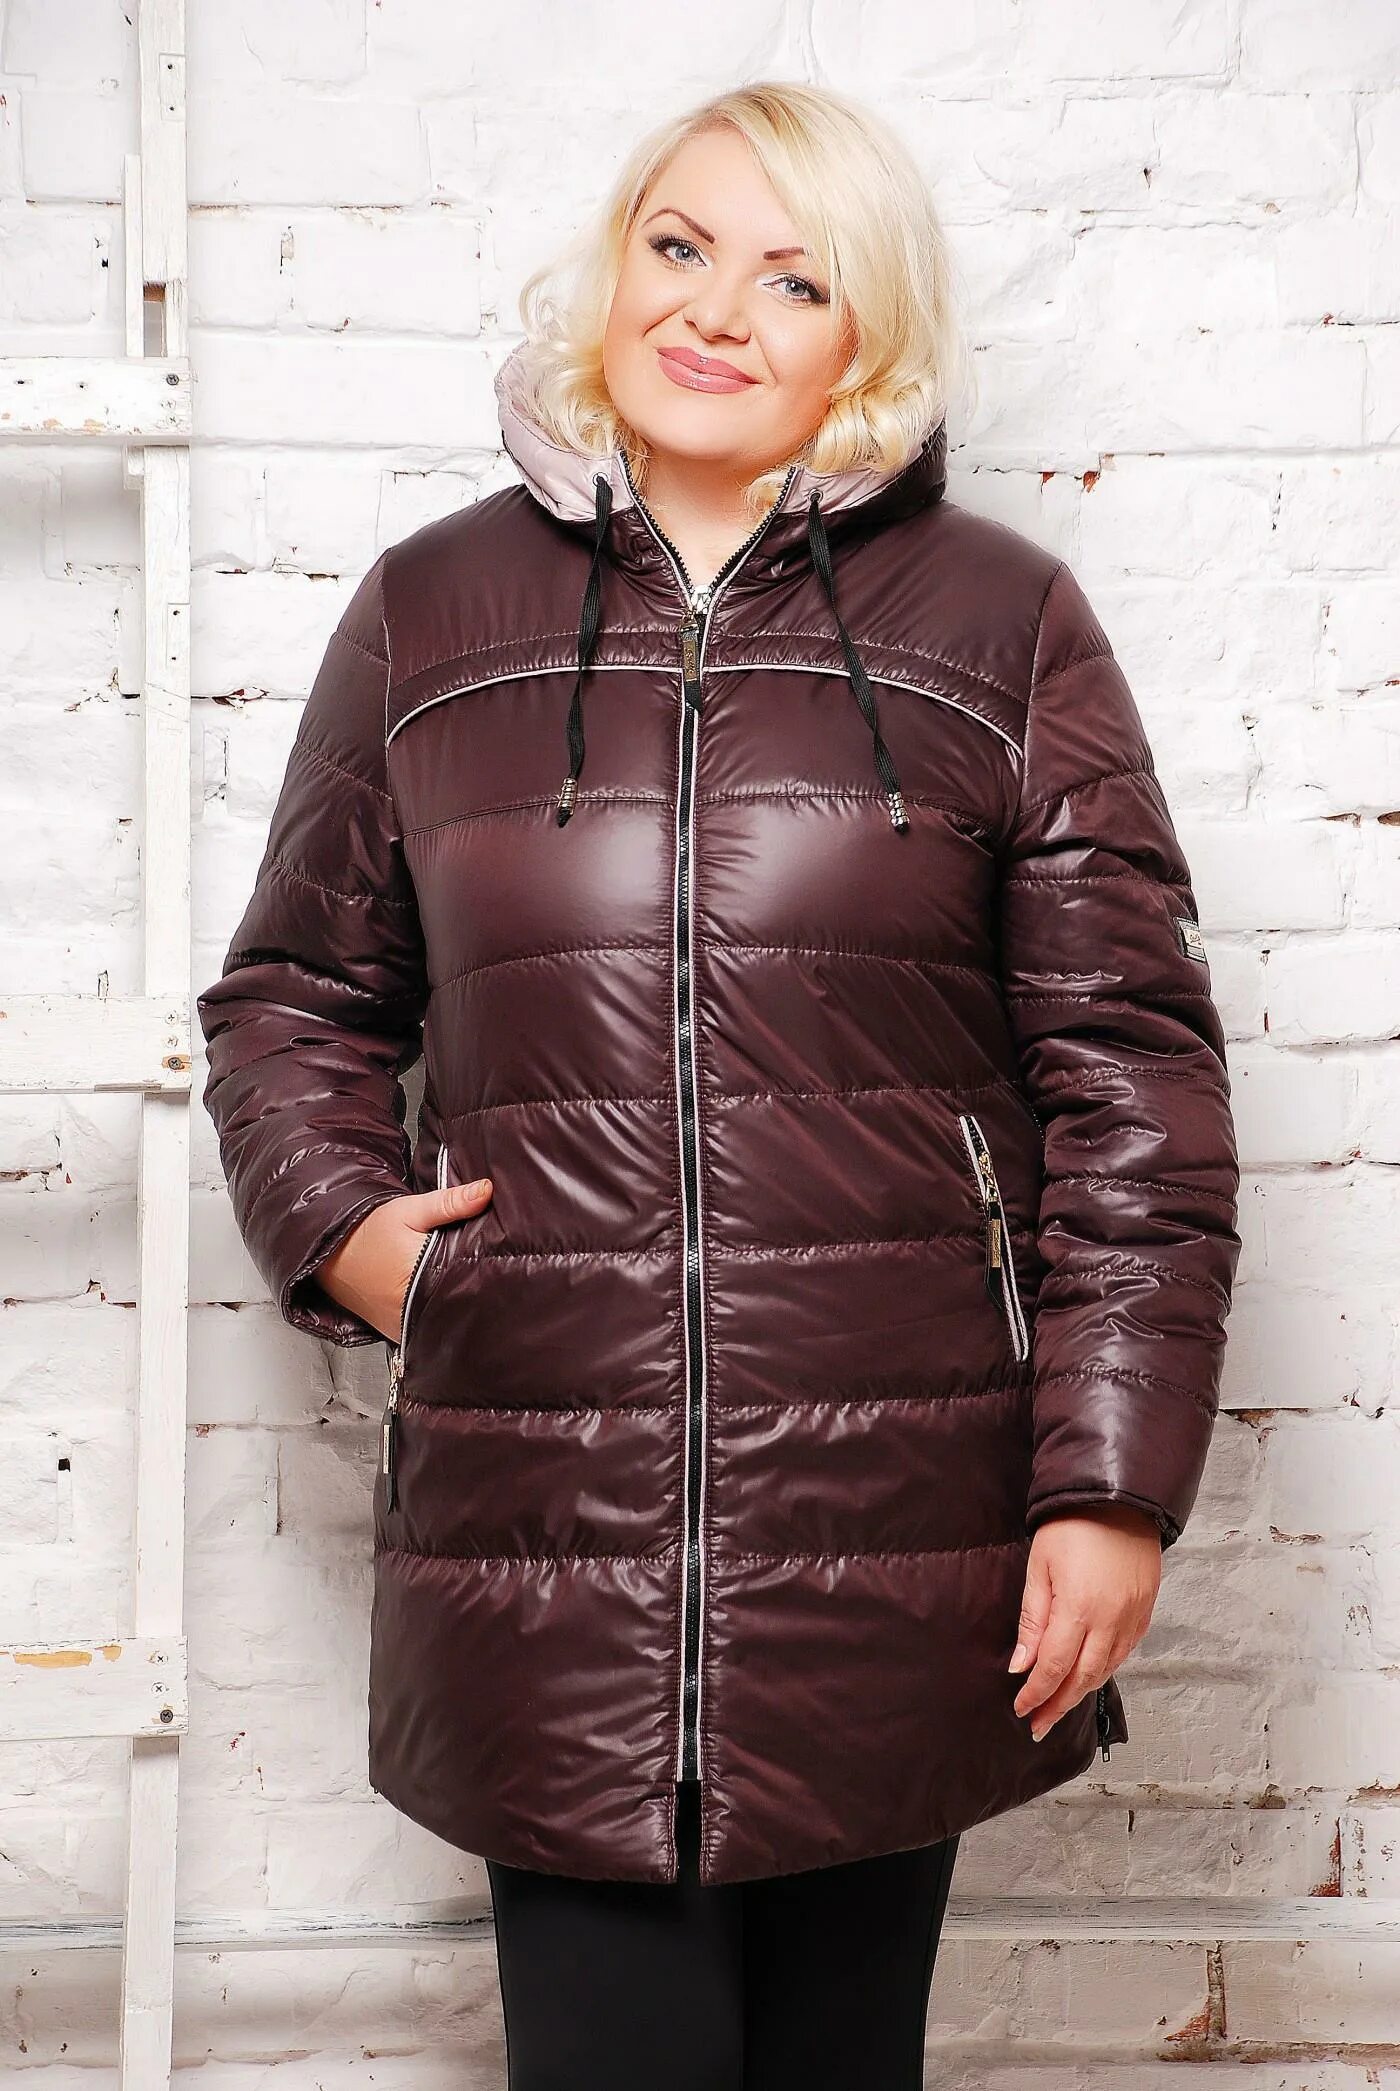 Женские осенние куртки больших размеров. Весенние куртки женские больших размеров. Осенние куртки для женщин 60 лет. Куртка женская большого размера.